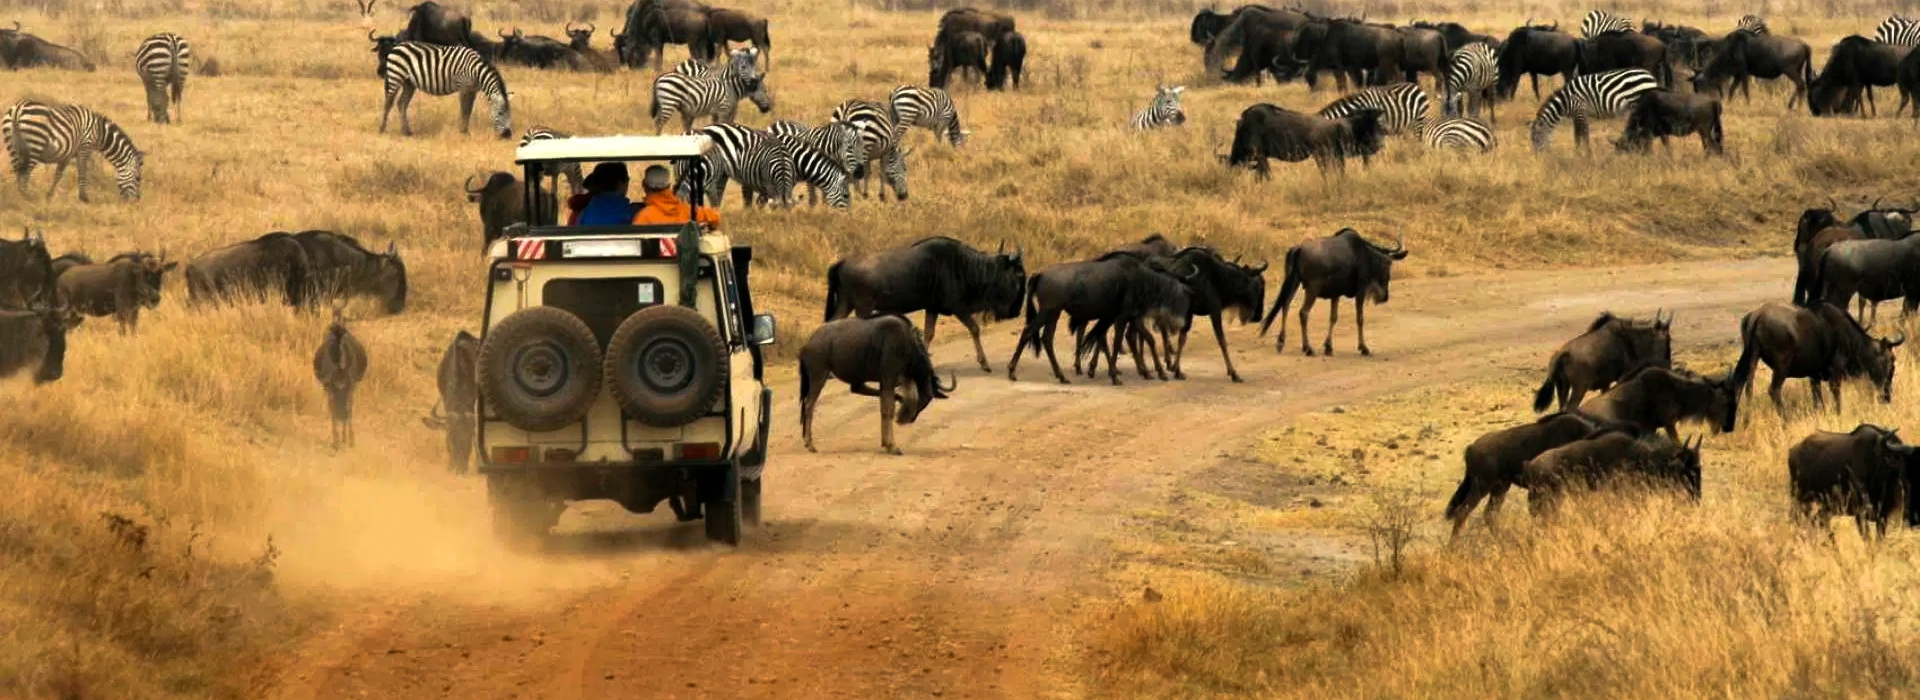 Short Wildlife Safari in Tanzania